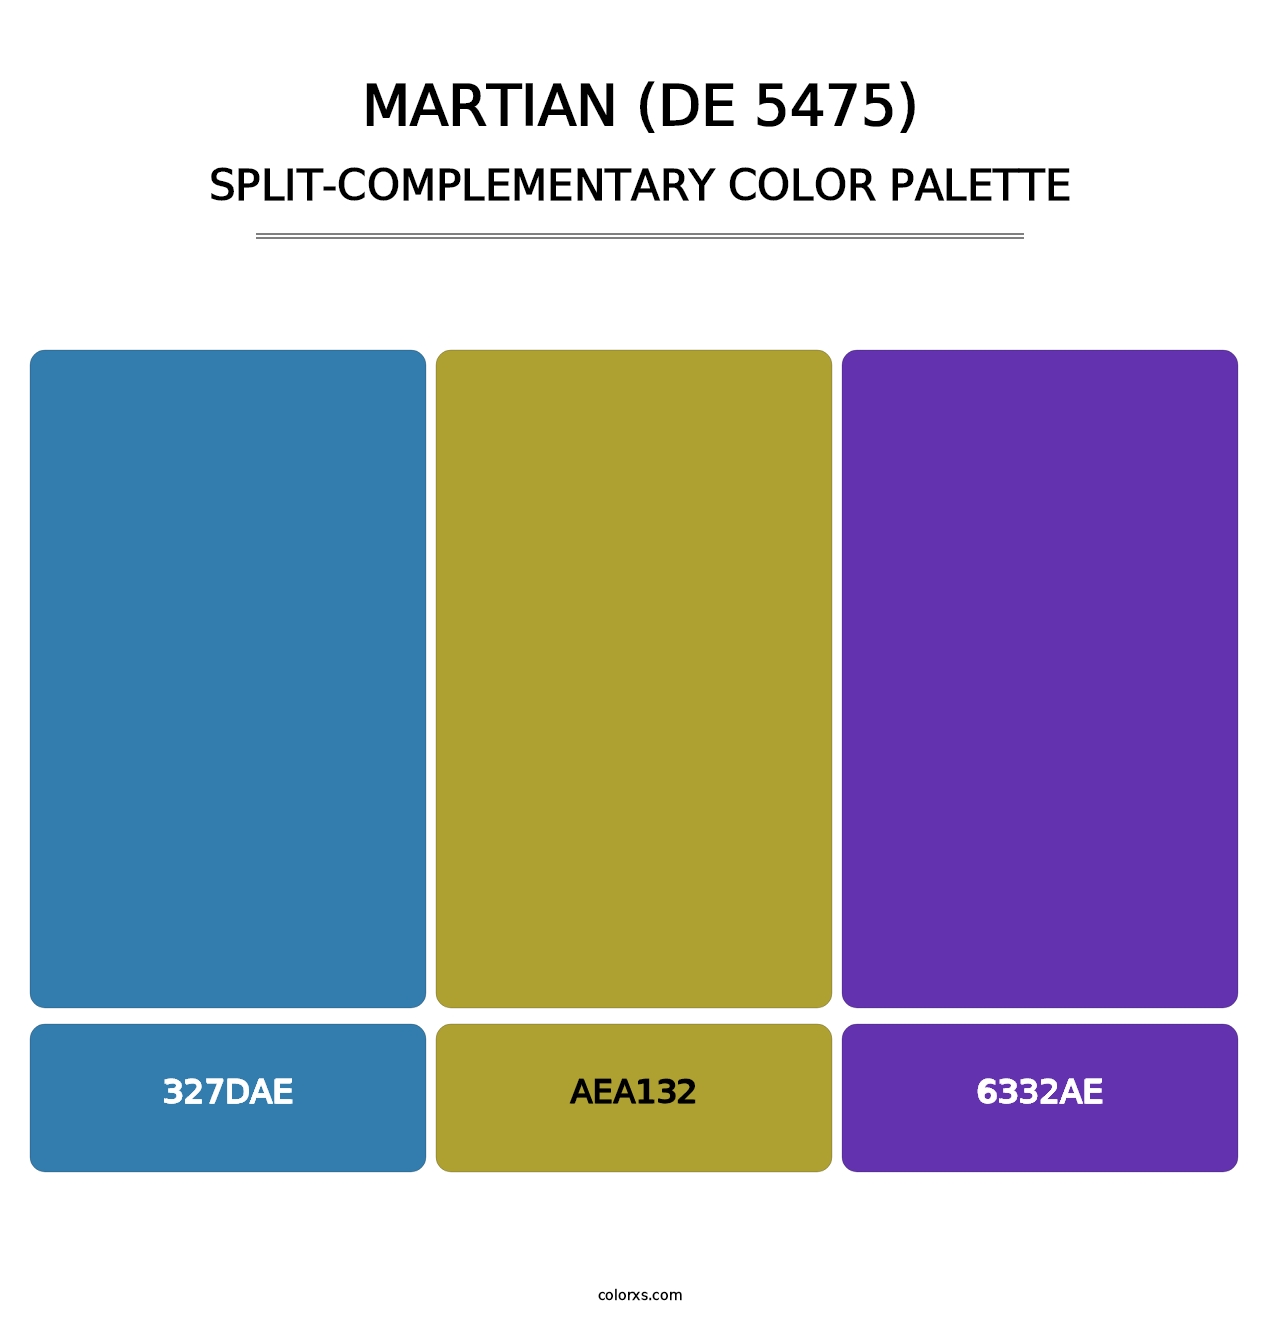 Martian (DE 5475) - Split-Complementary Color Palette